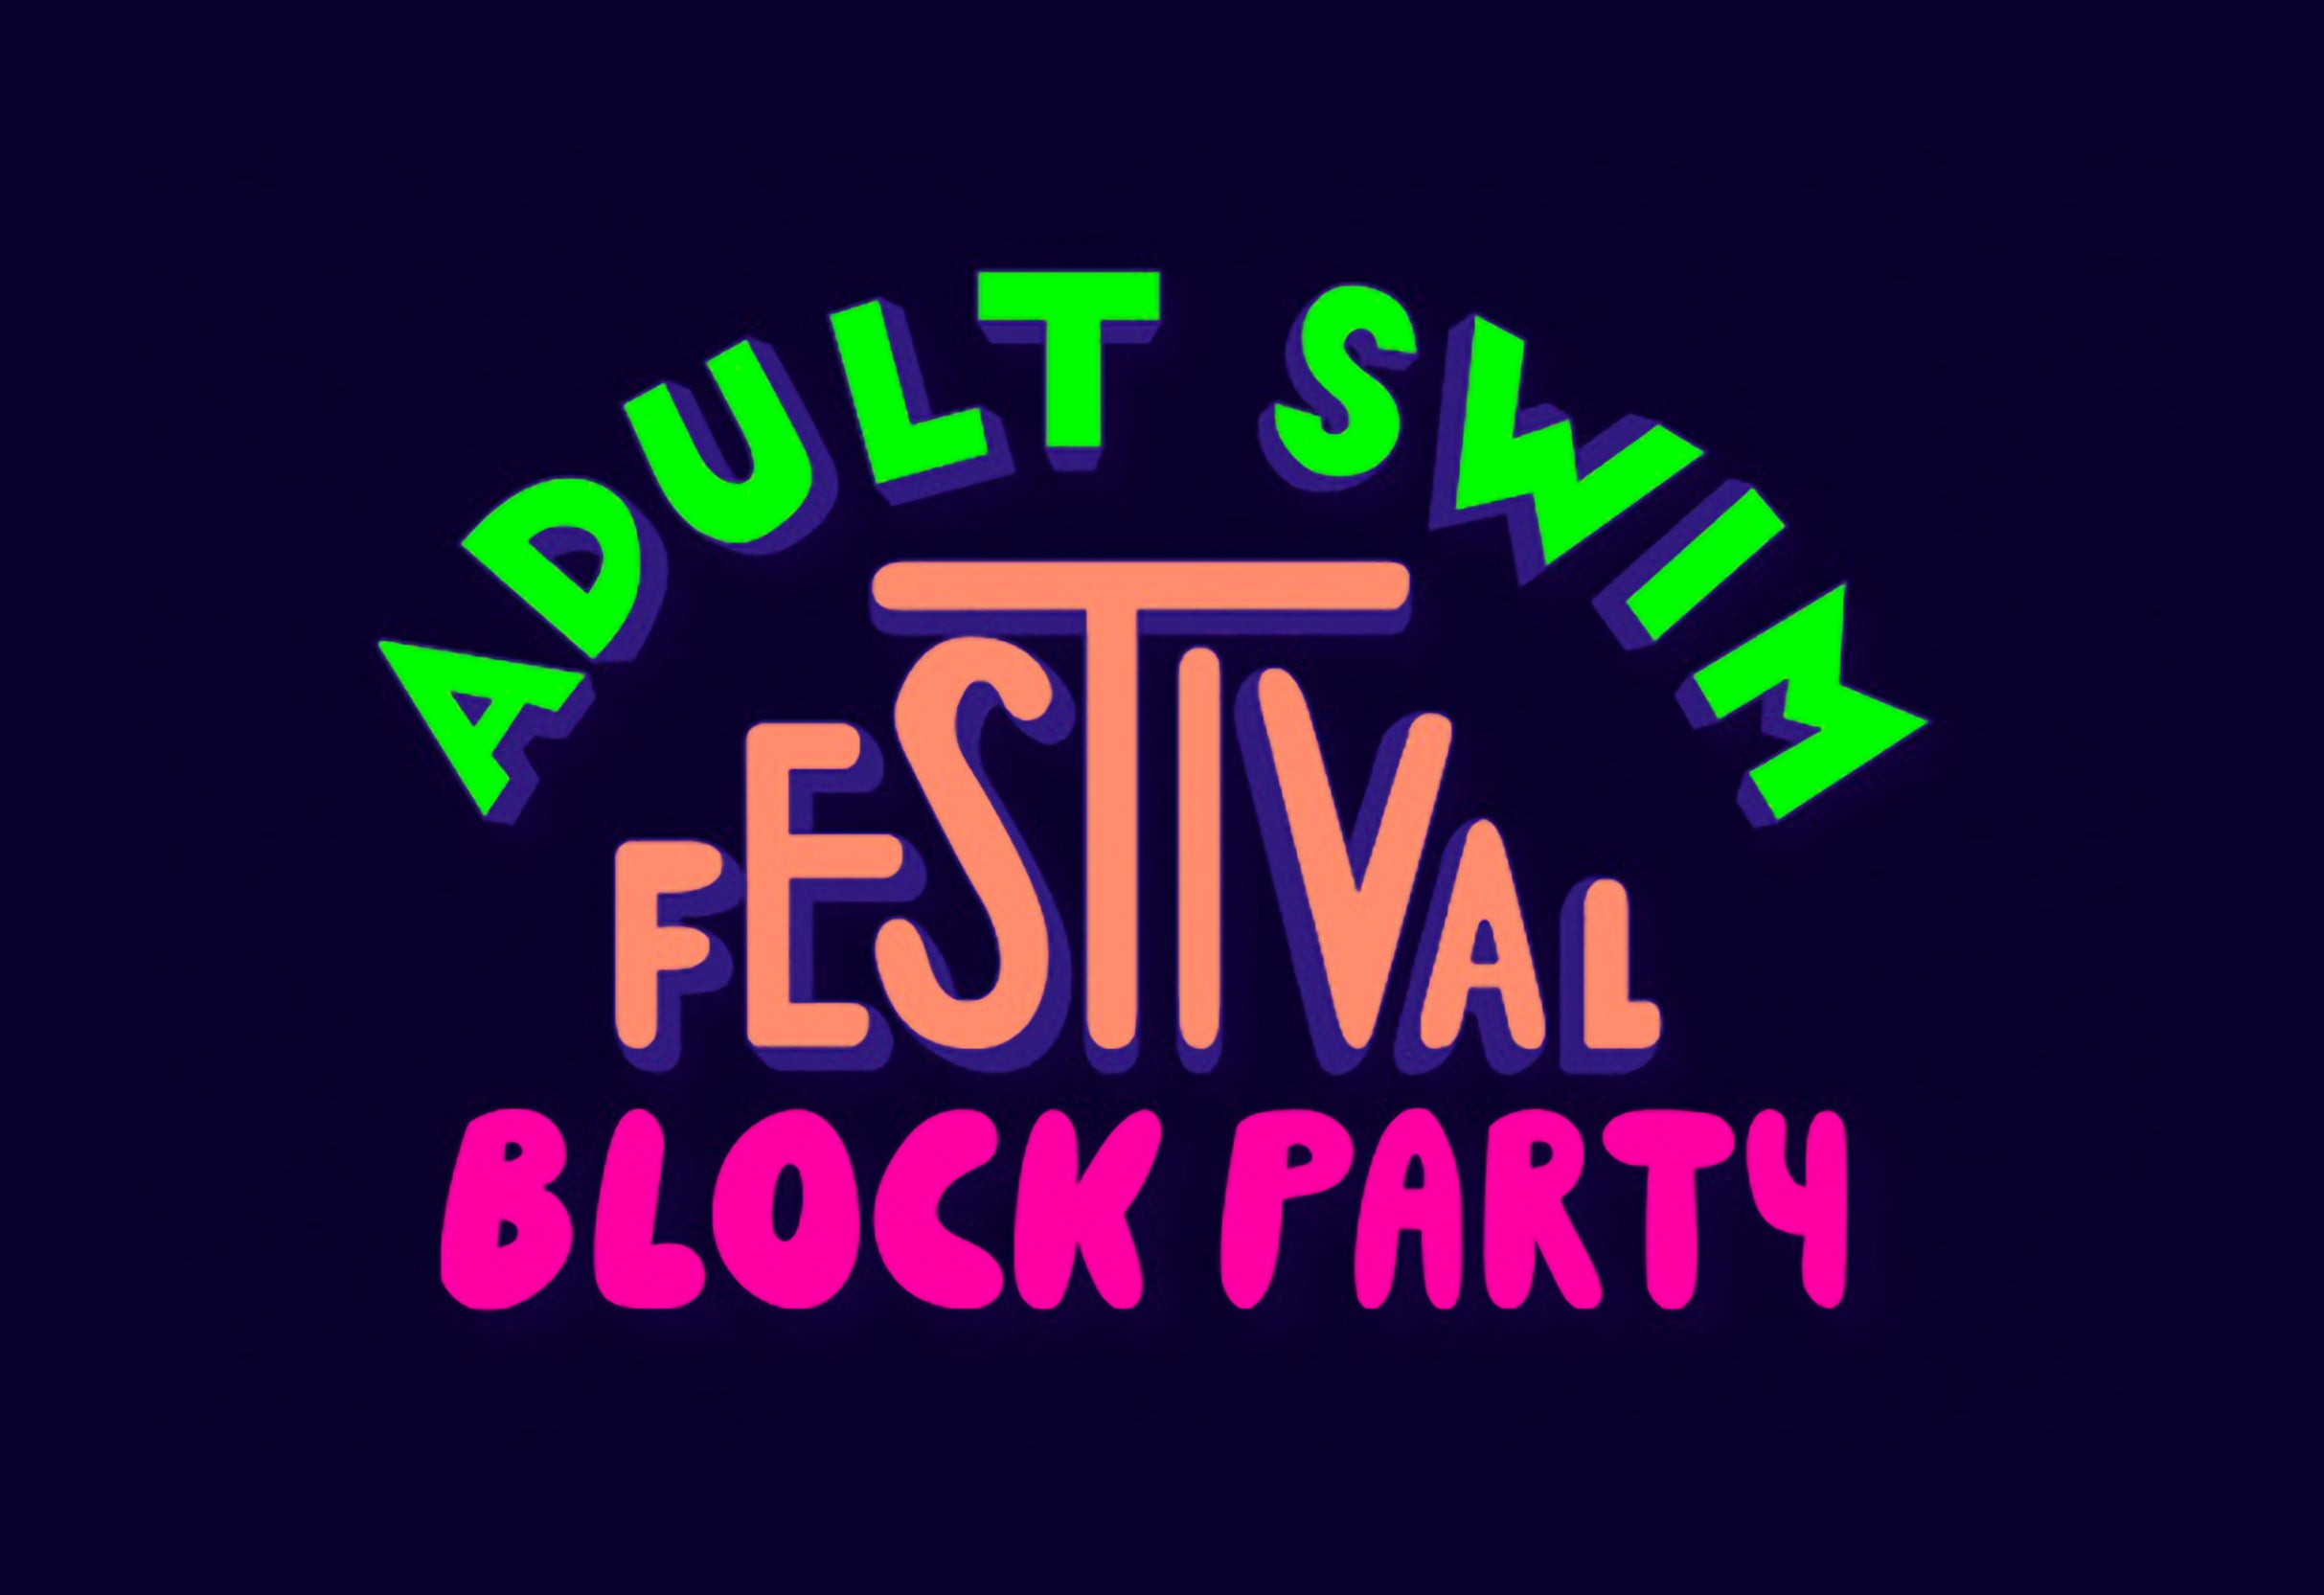 Rosebud Baker w/ Megan Koester- Adult Swim Festival Block Party in Philadelphia promo photo for VIP presale offer code